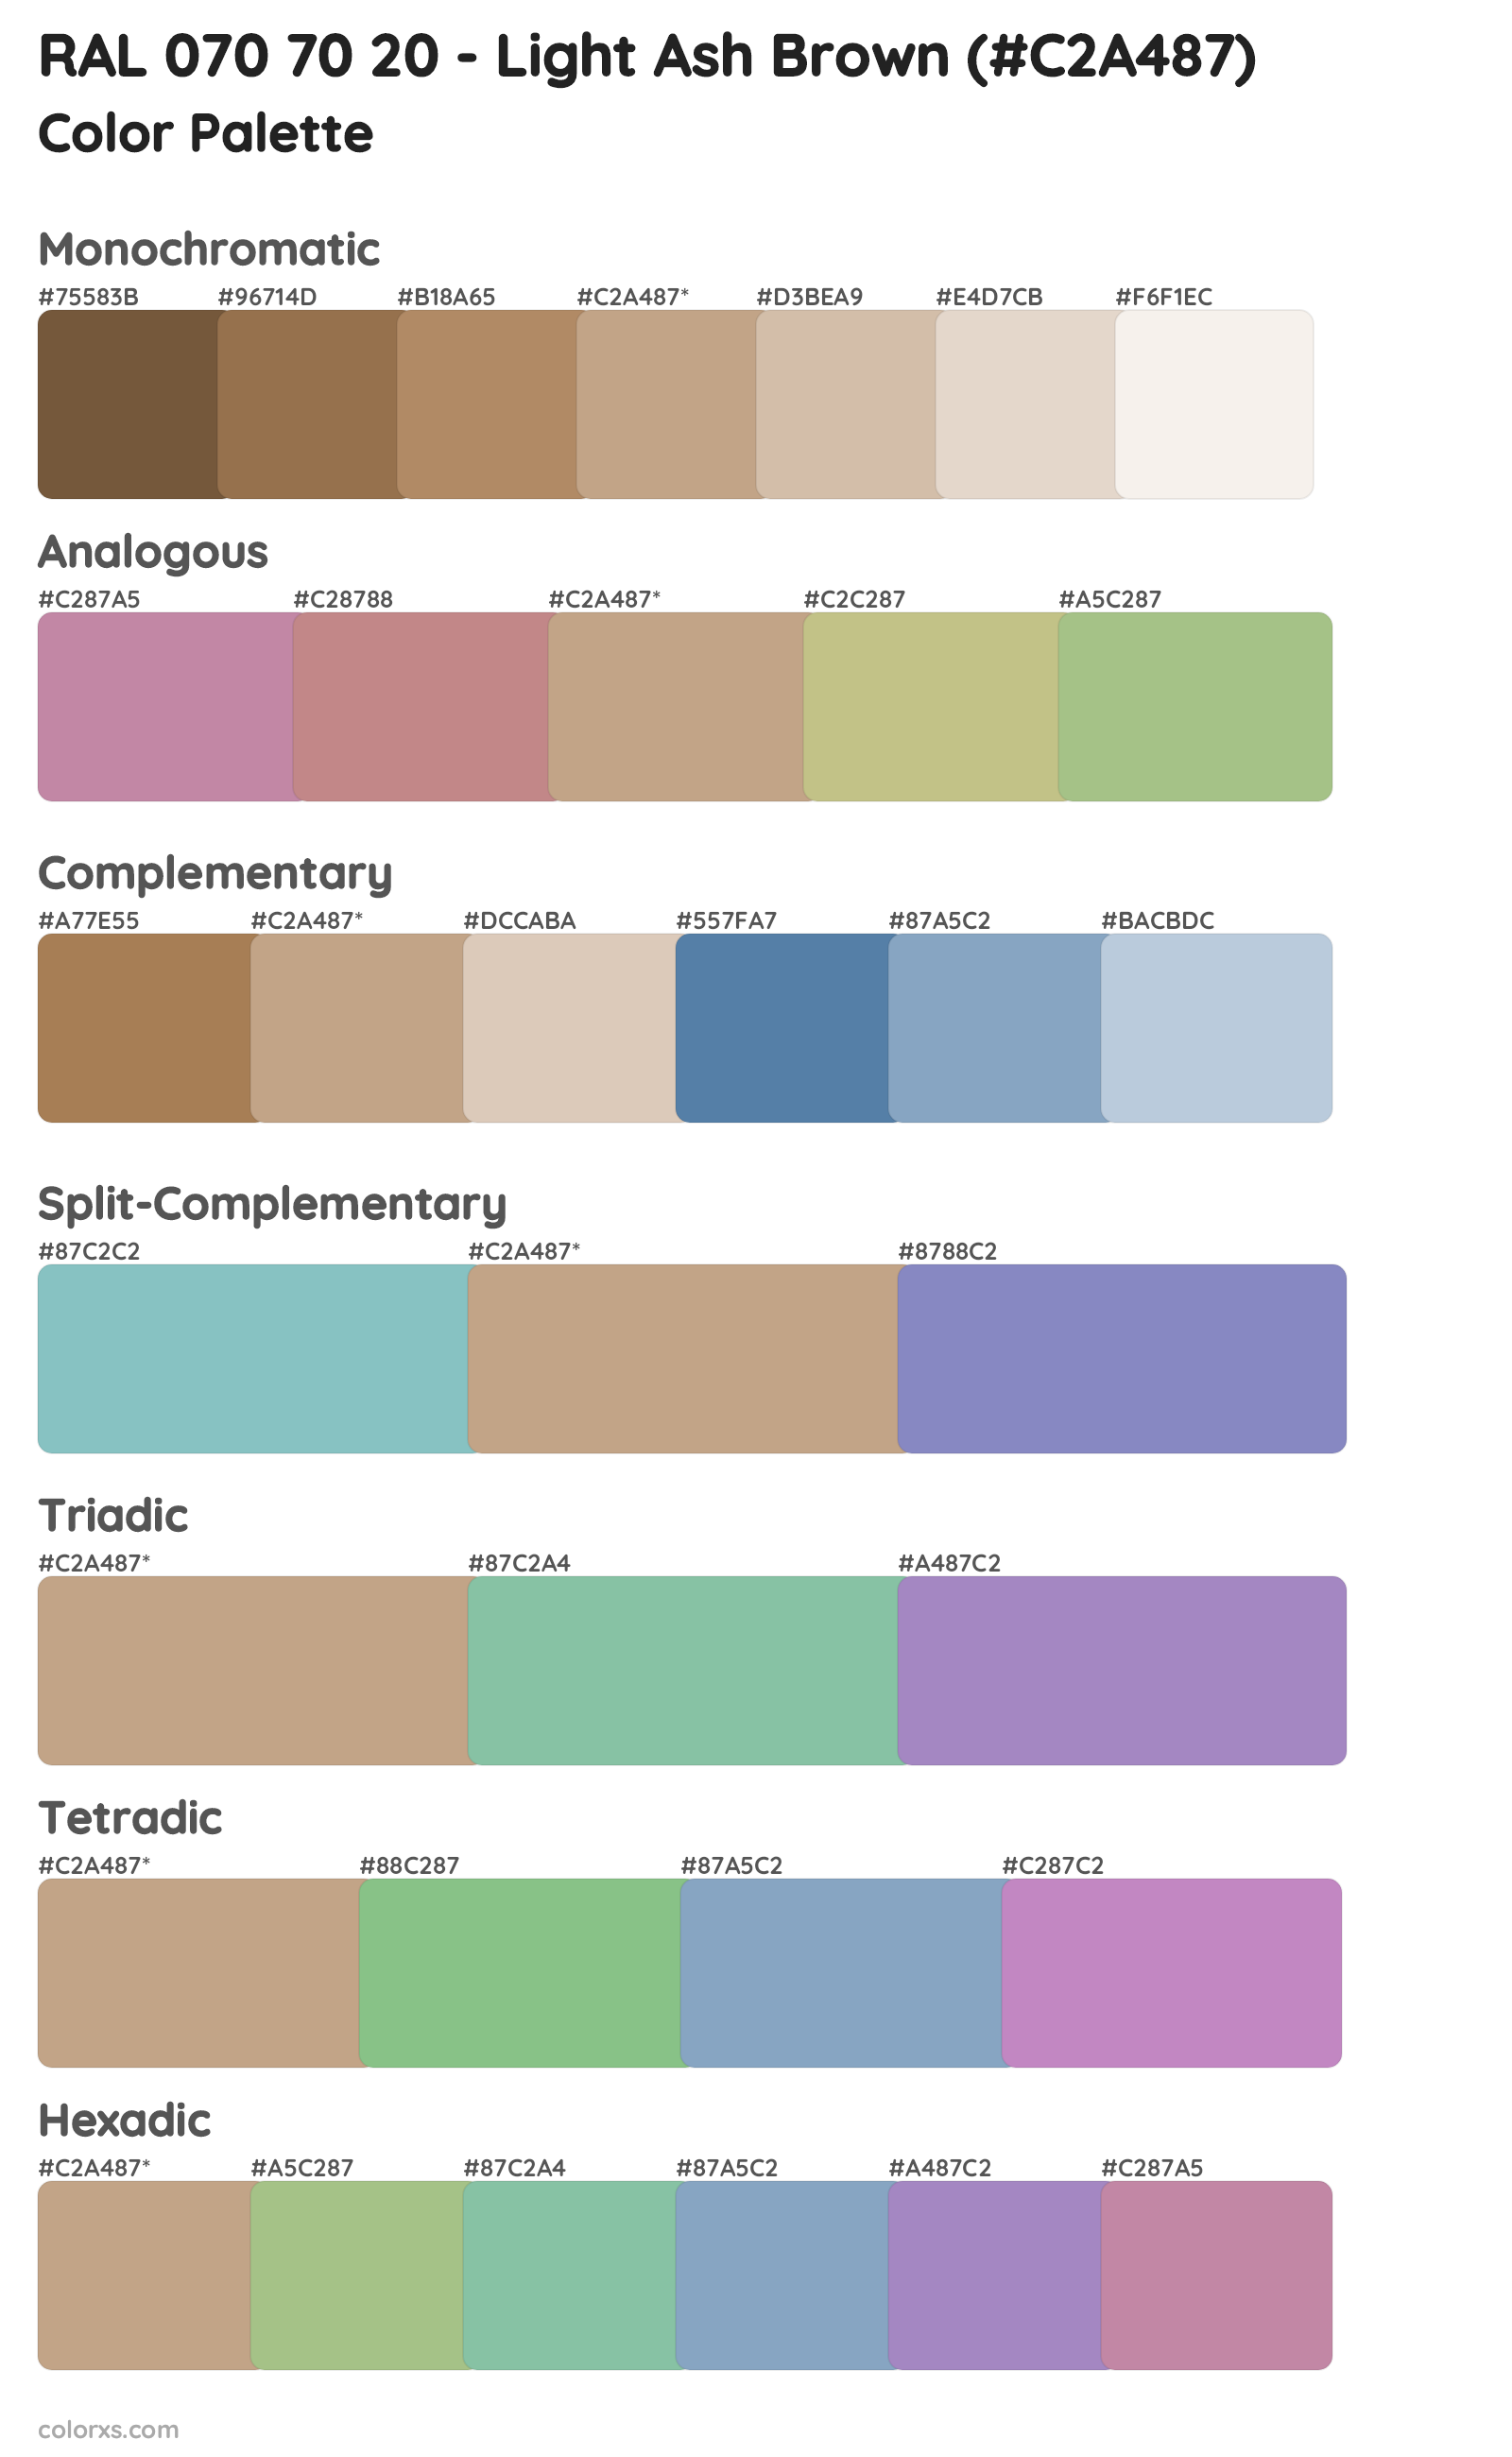 RAL 070 70 20 - Light Ash Brown Color Scheme Palettes